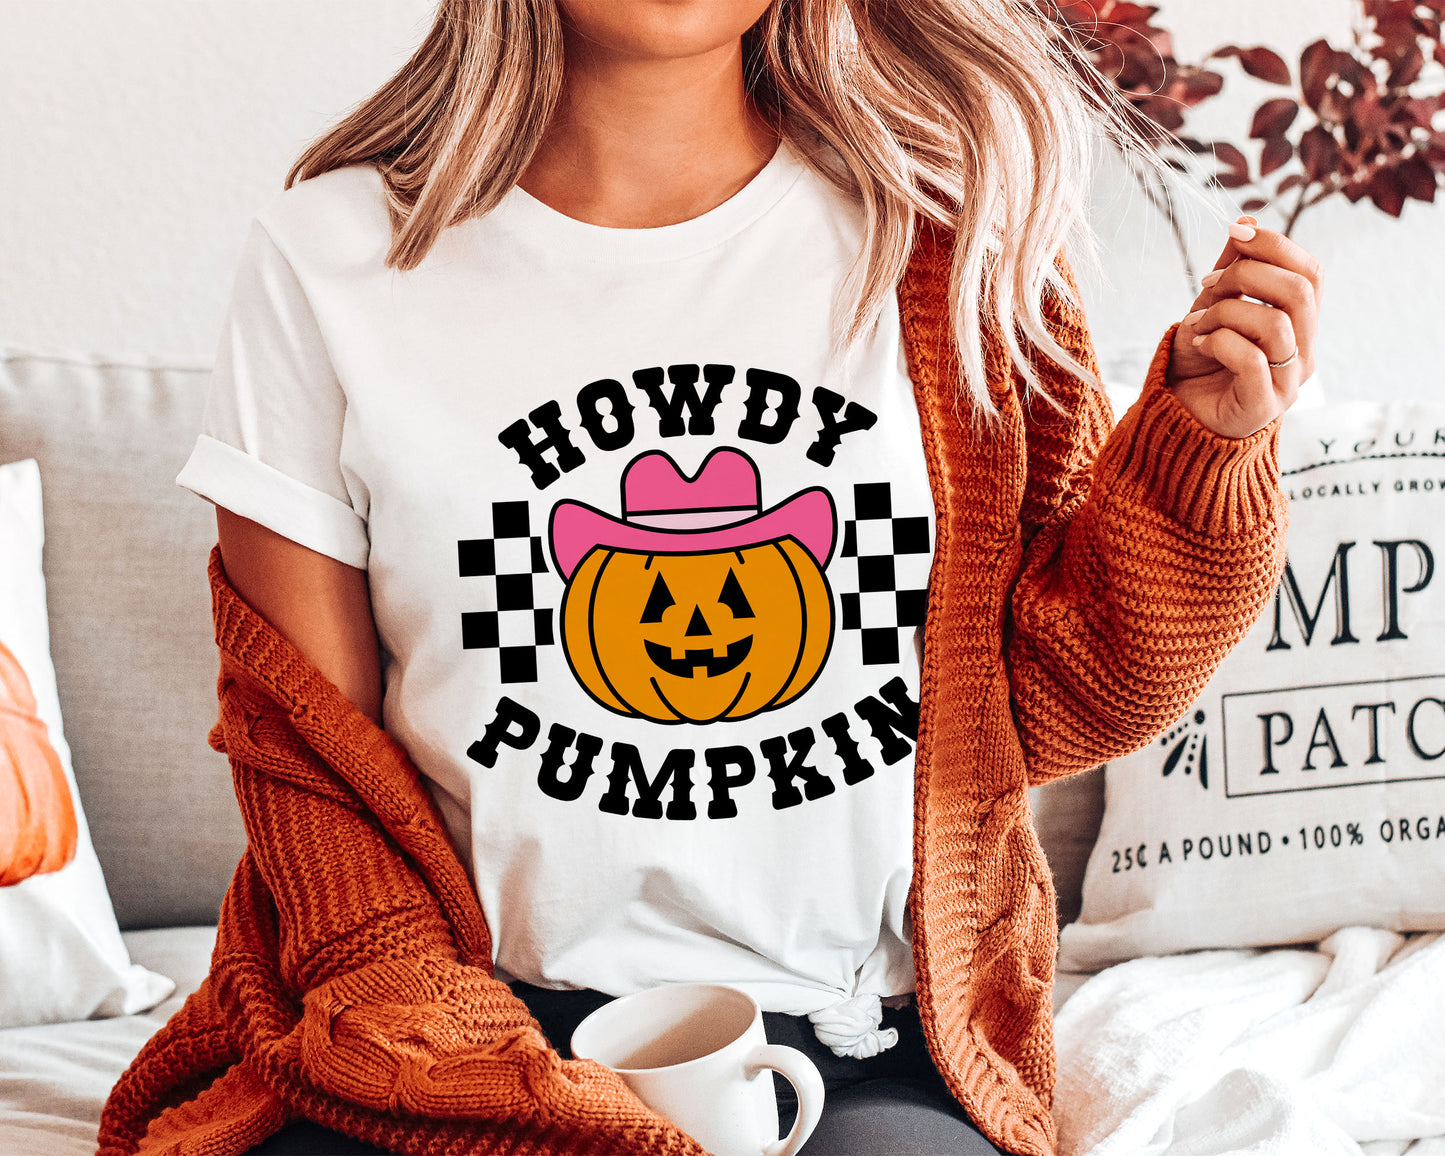 Howdy Pumpkin SVG